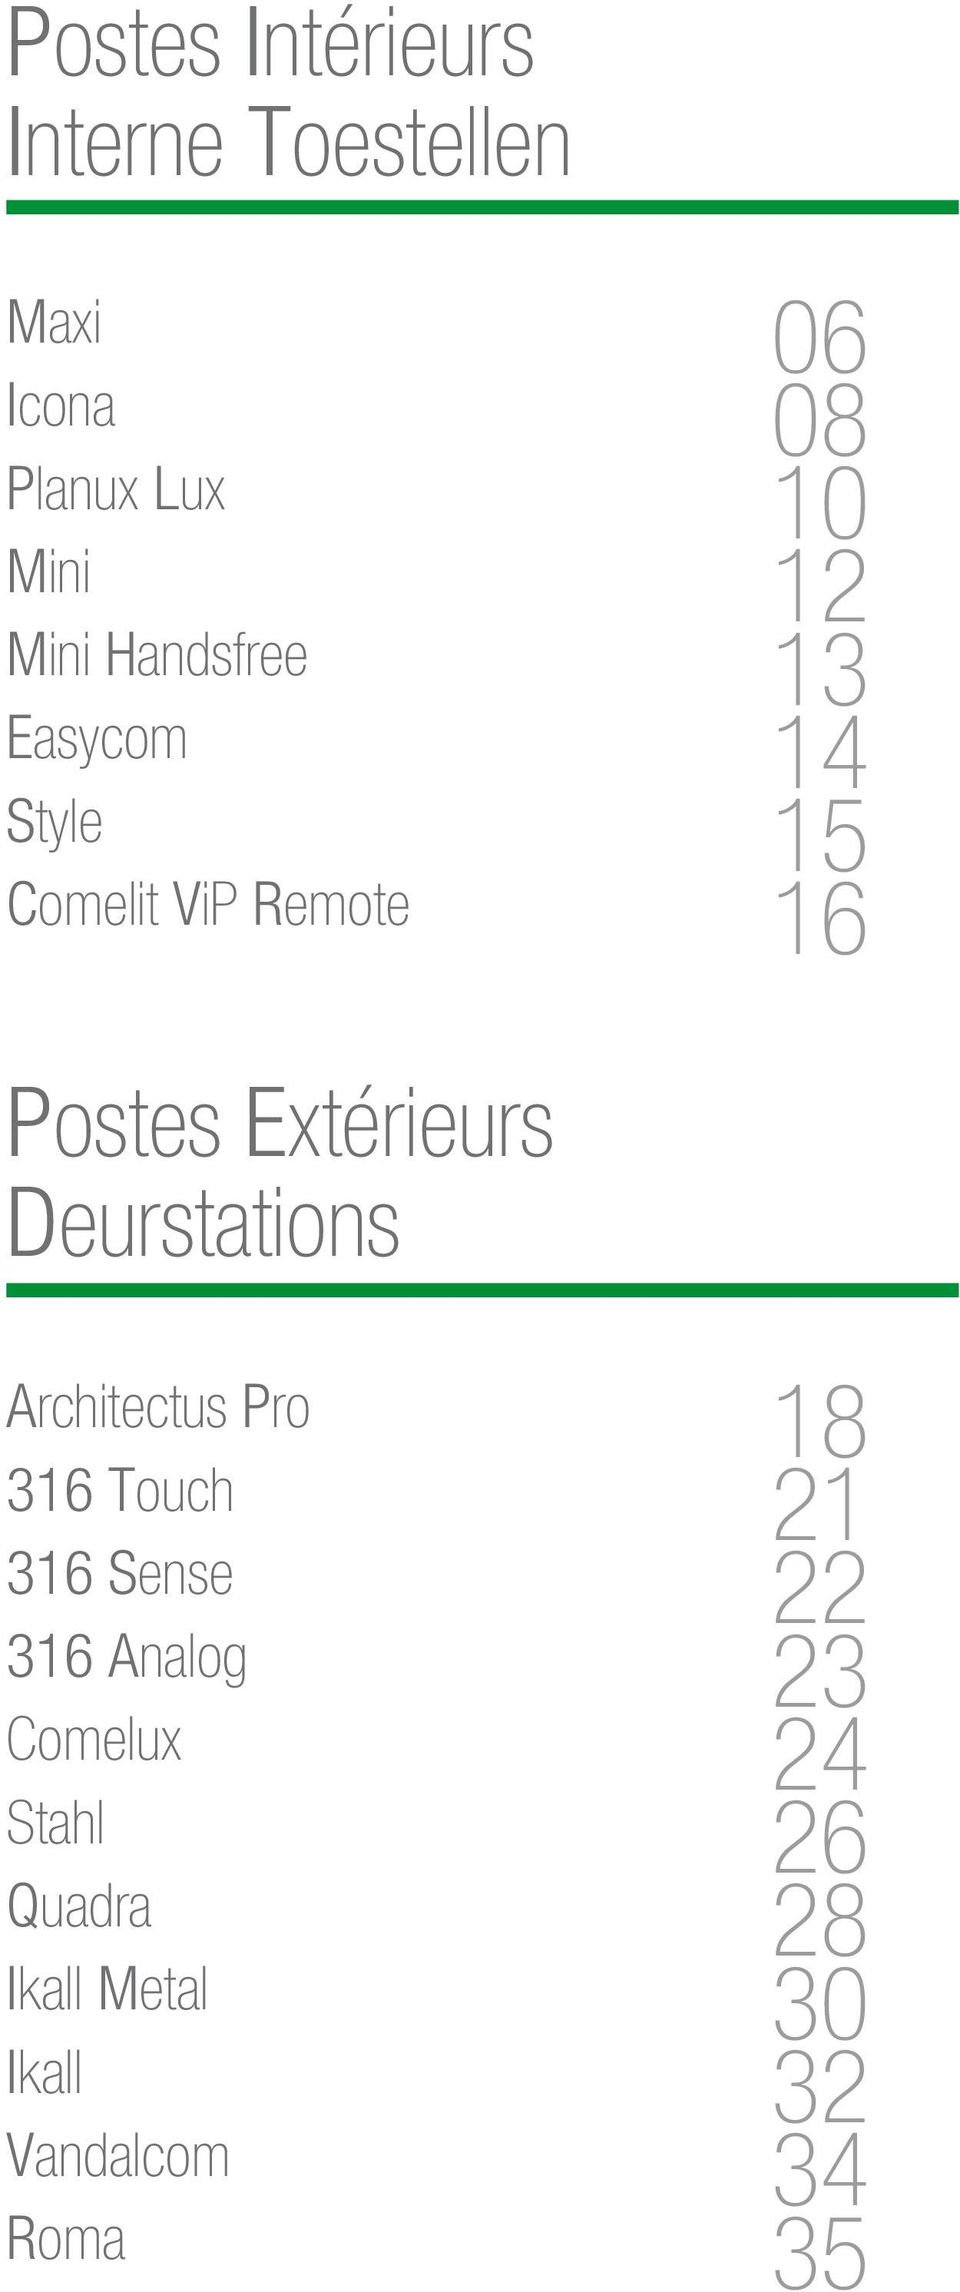 Extérieurs Deurstations Architectus Pro 316 Touch 316 Sense 316 Analog